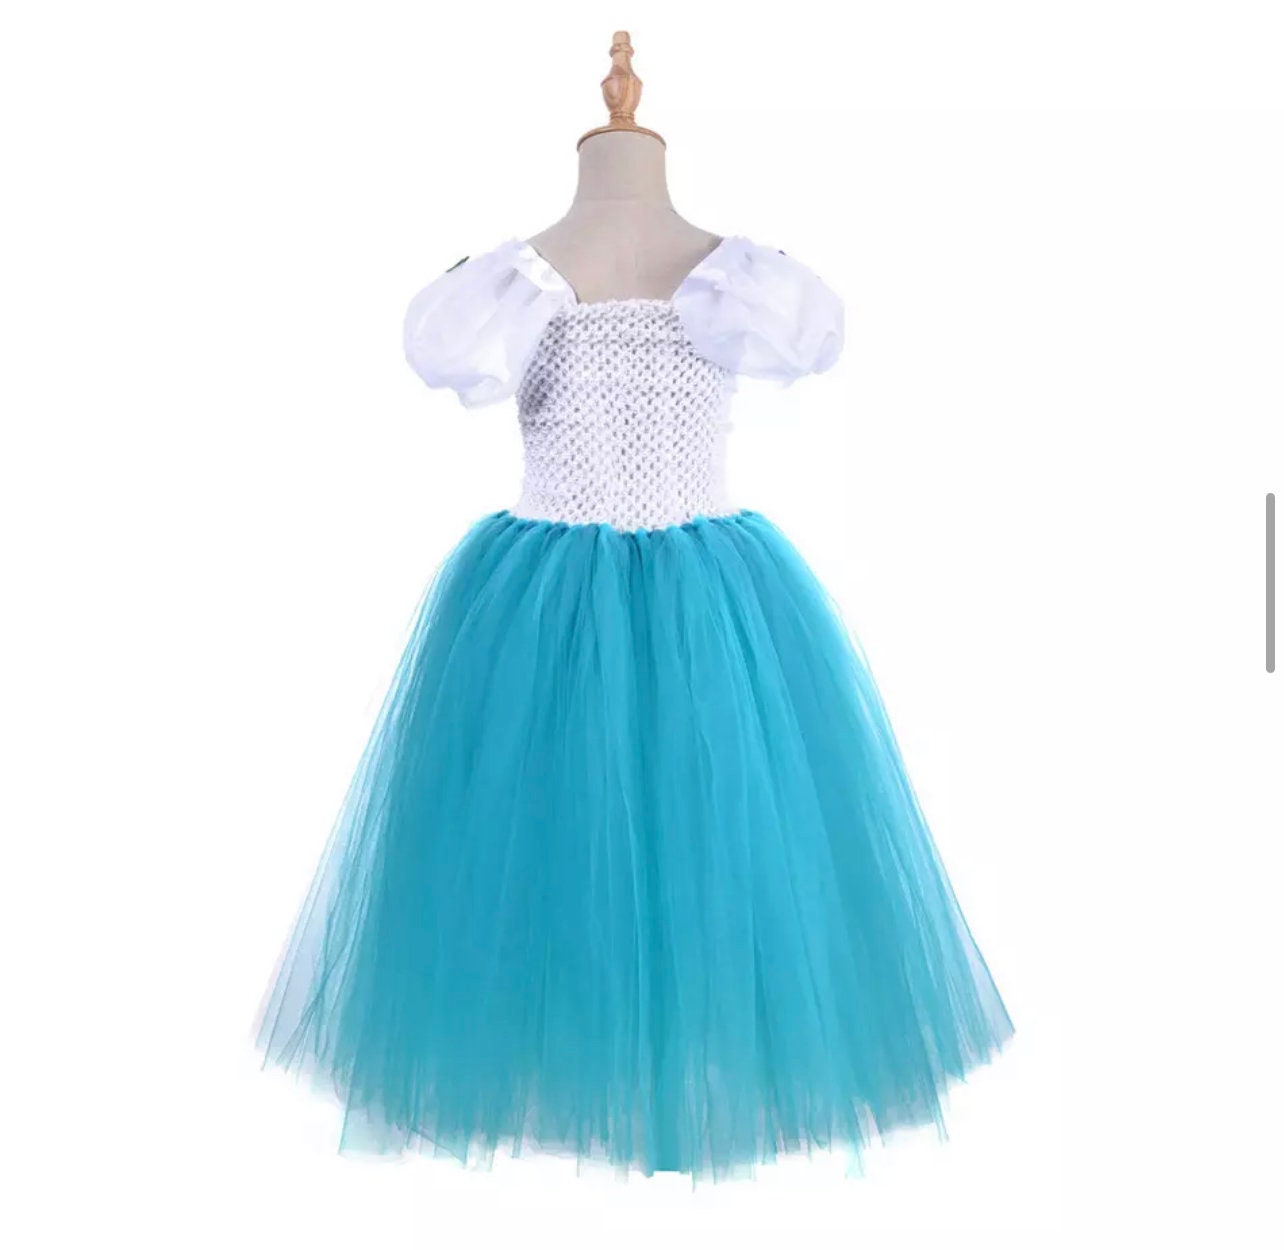 Mirabel Tutu Dress Set Toddlers Girls Encanto